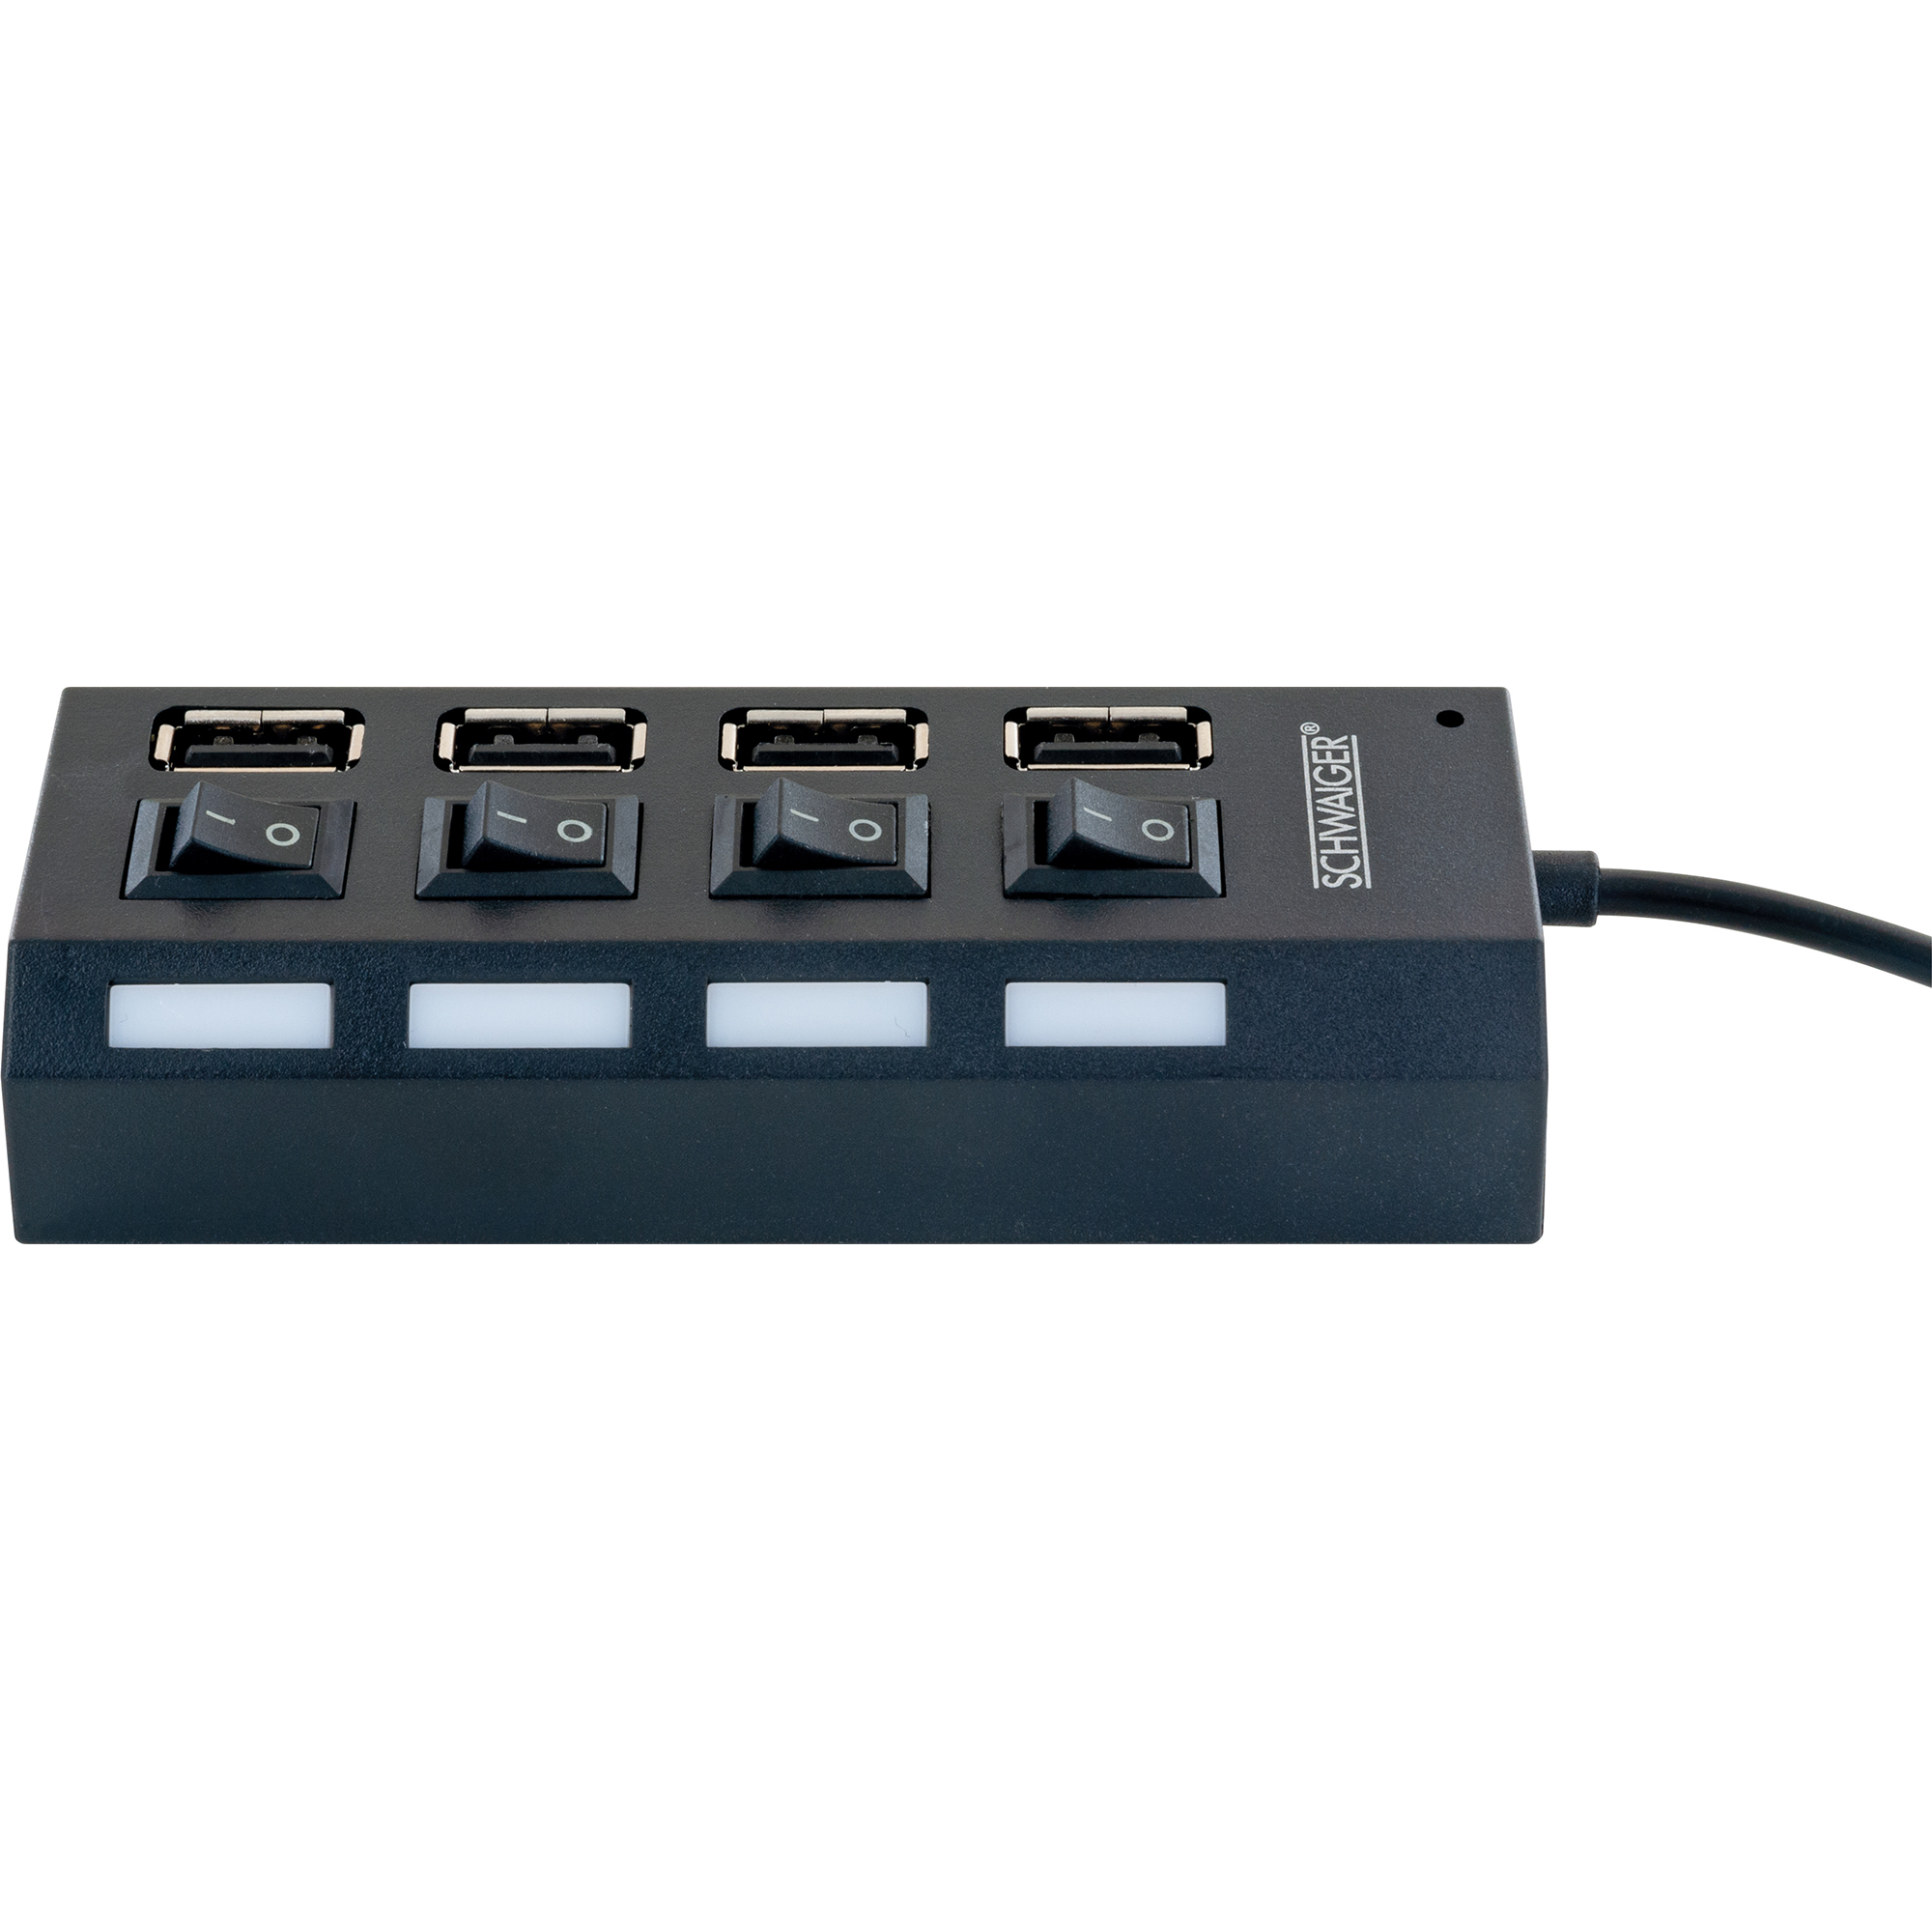 USB 2.0 HUB schwarz 4-fach mit Schaltern + product picture